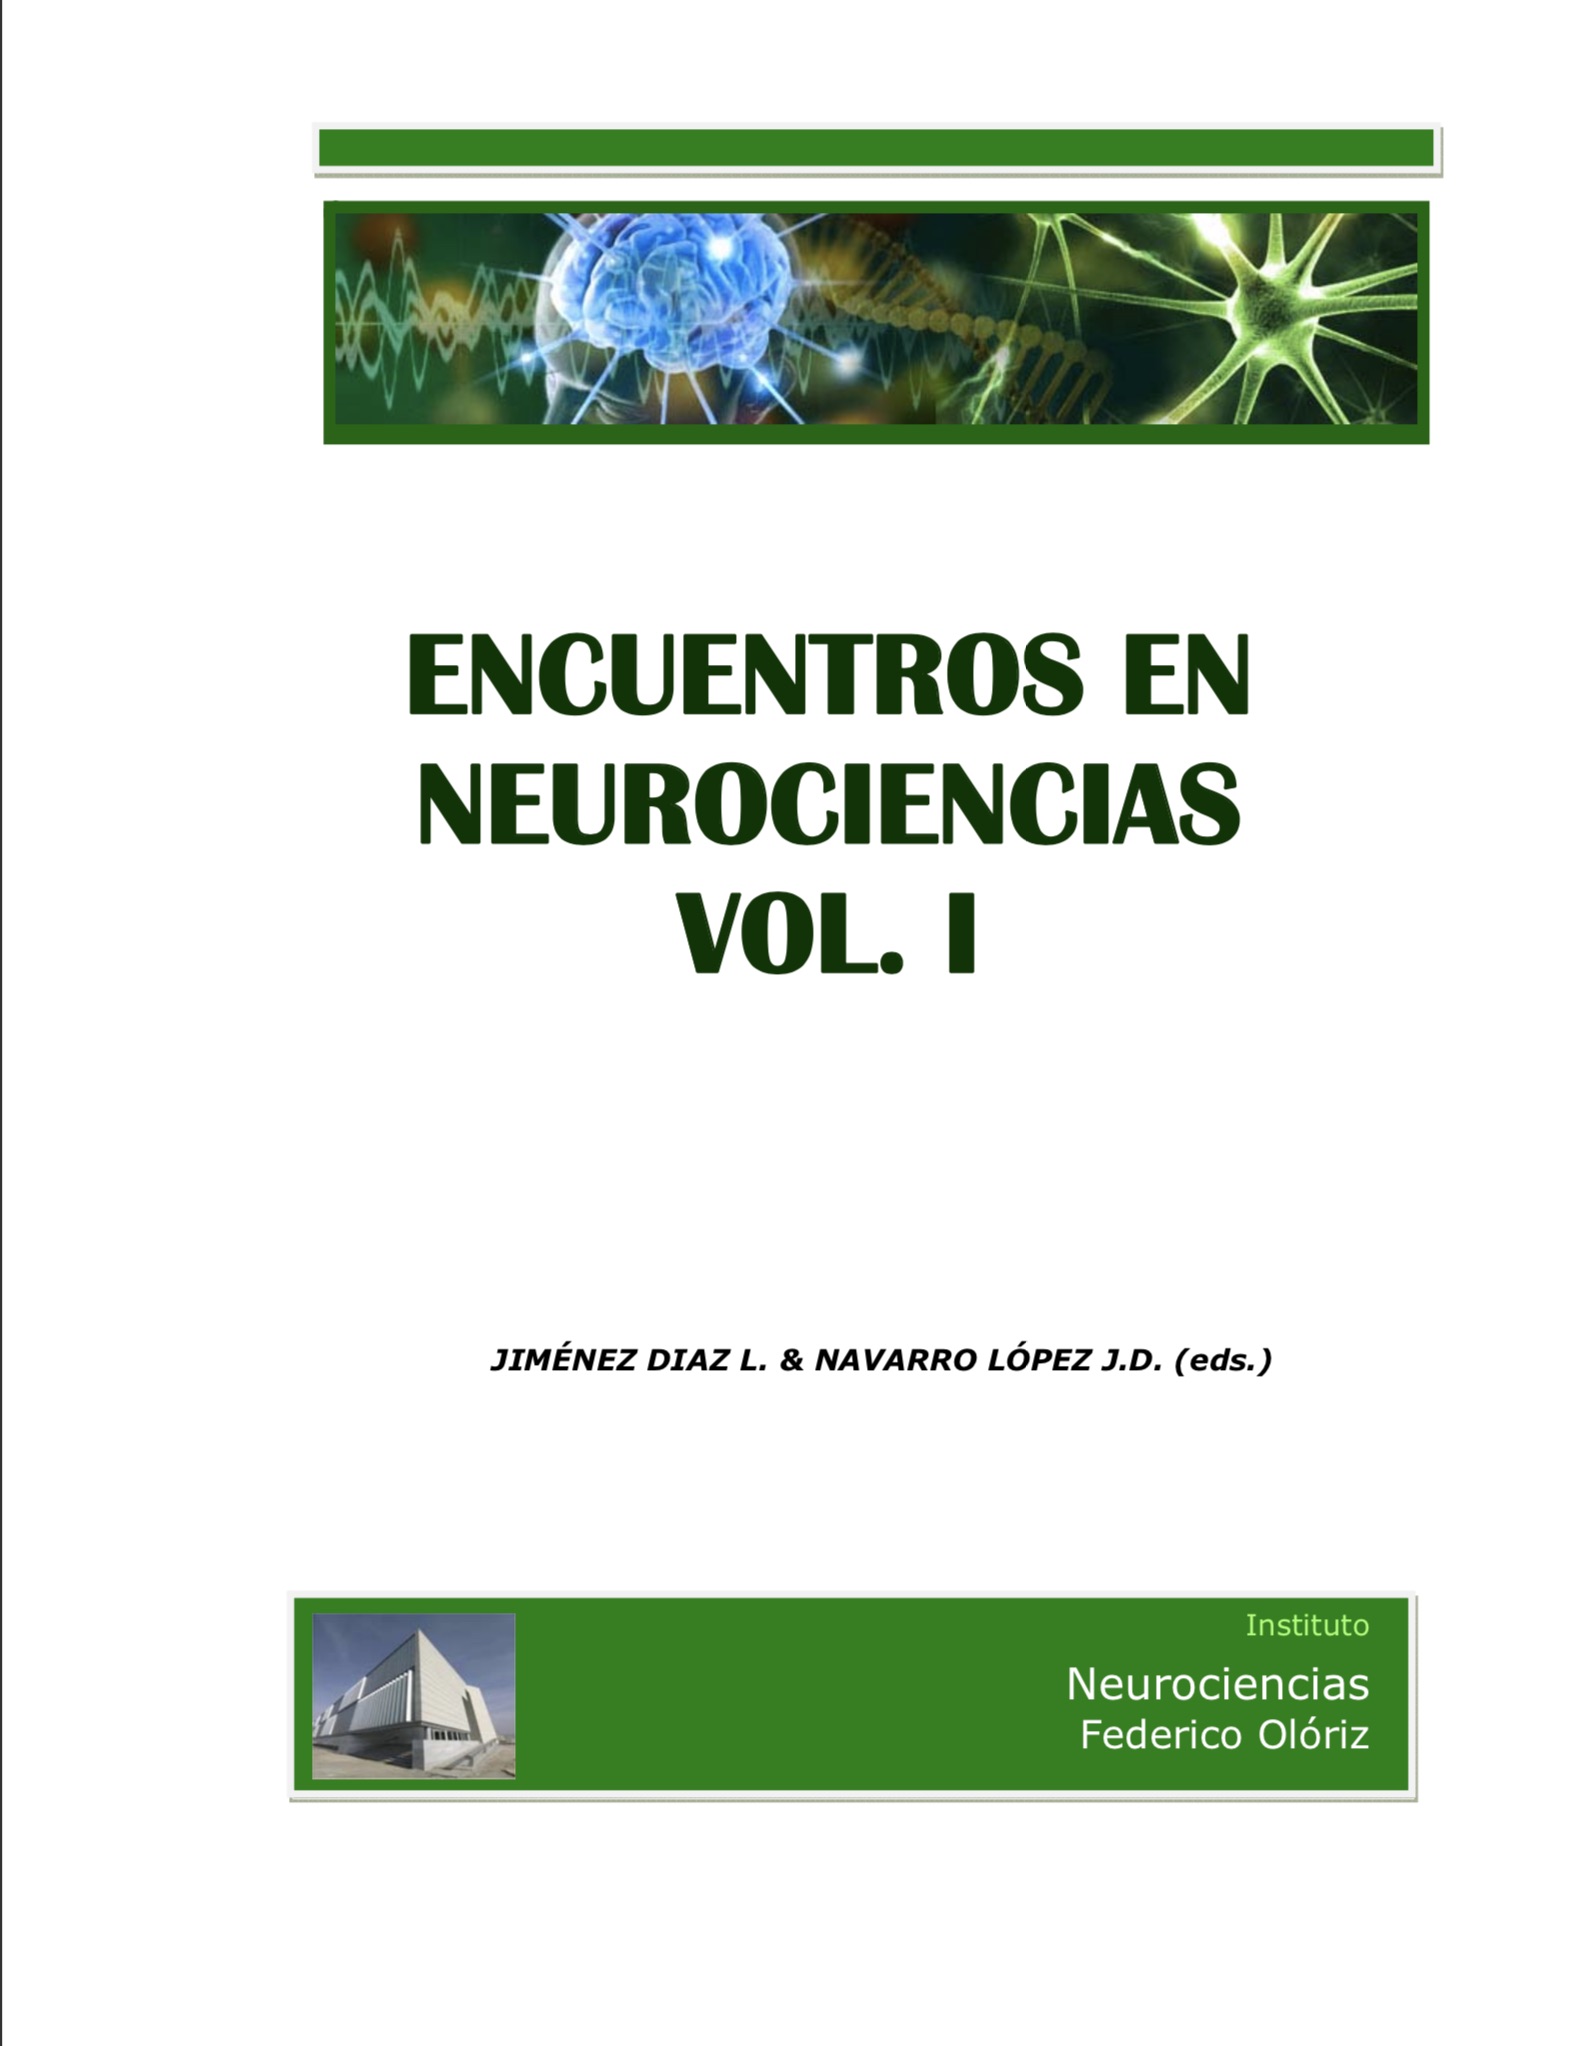 Encuentros en Neurociencias. Vol I. 2010